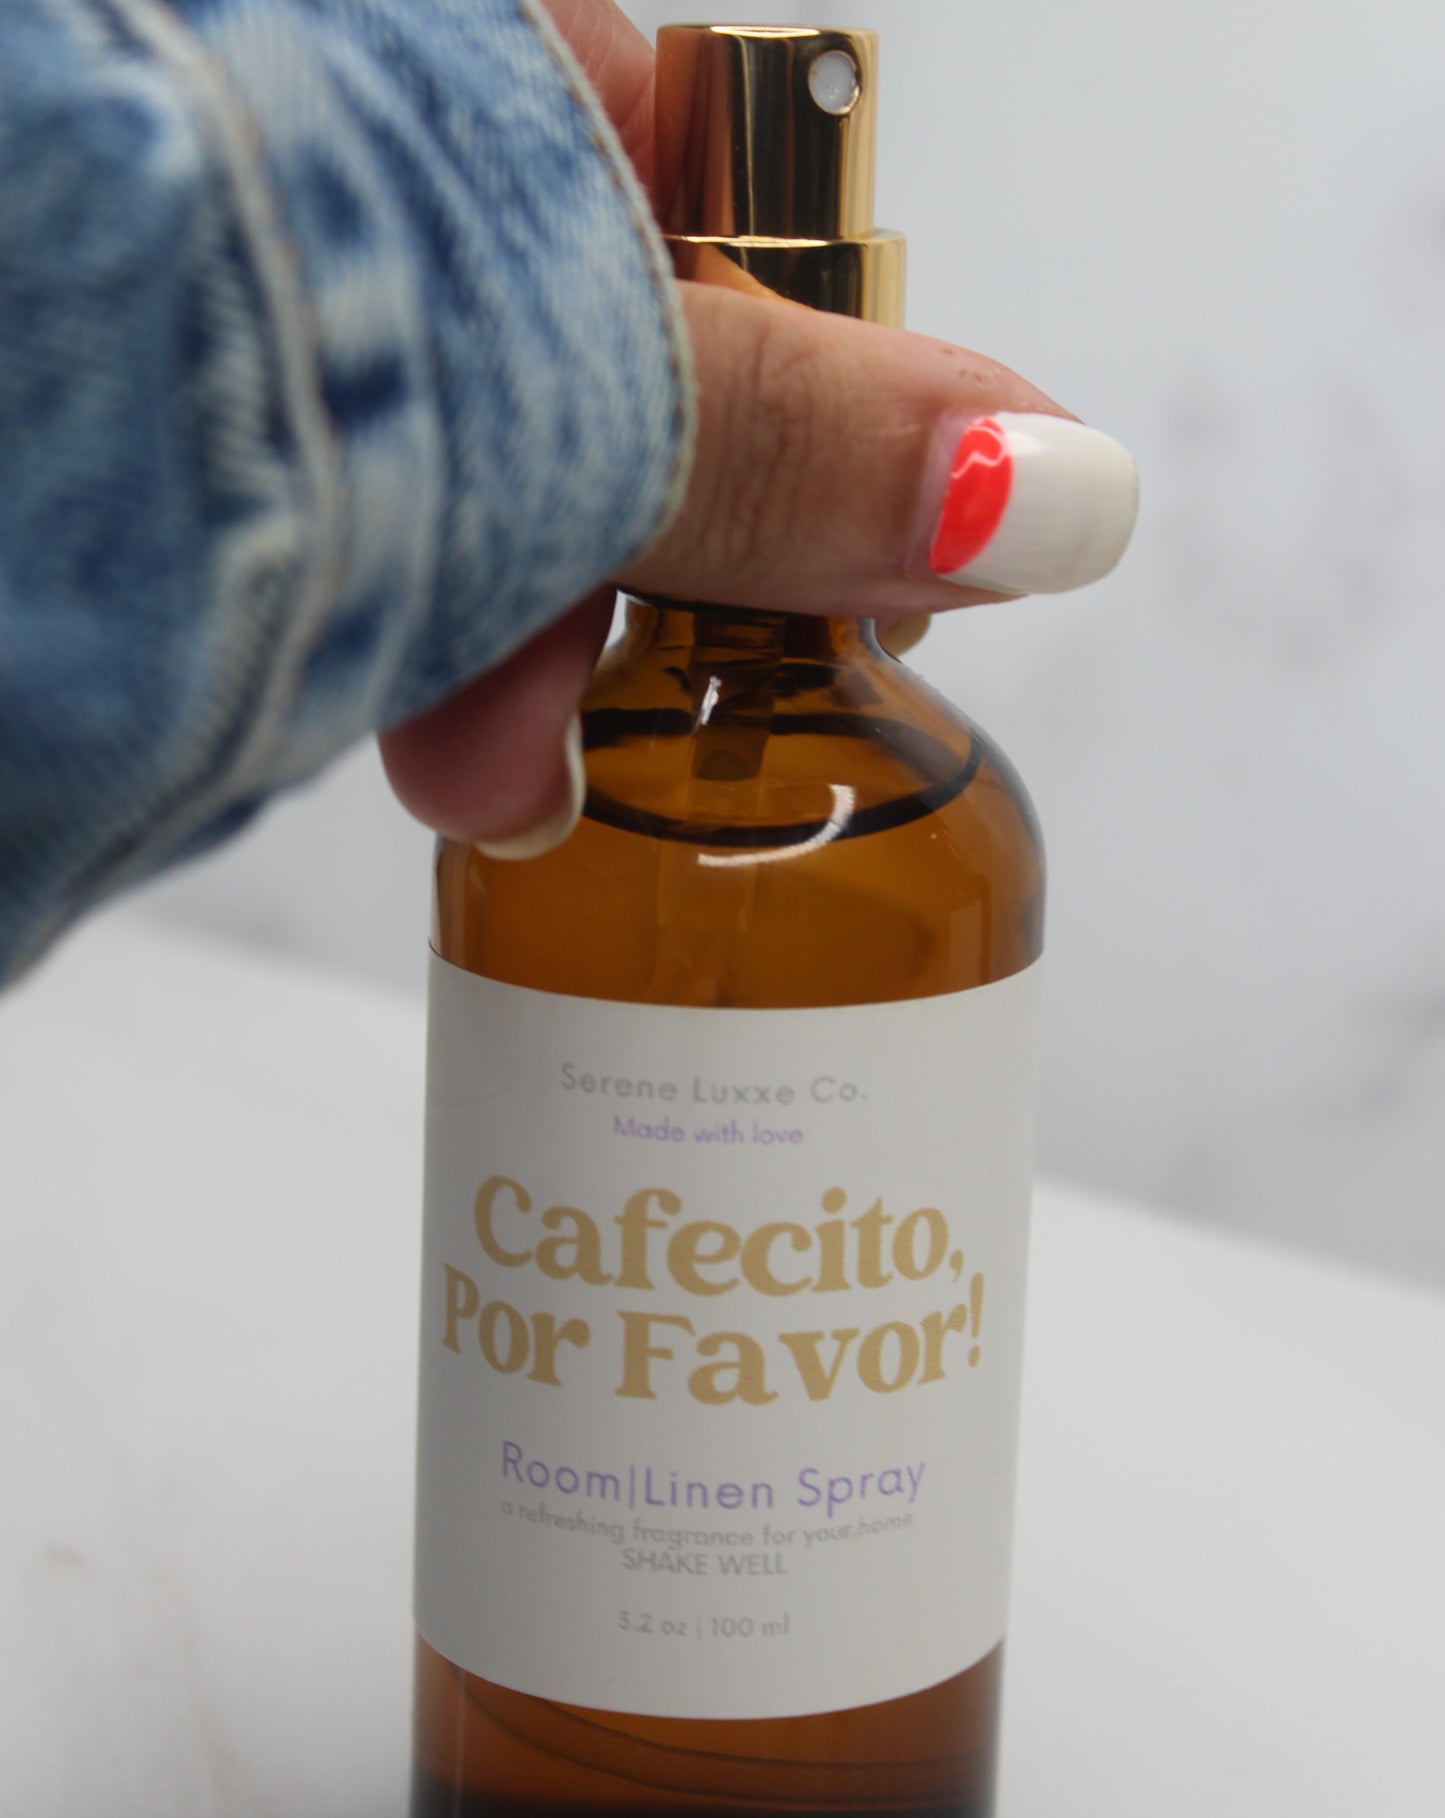 Cafecito, Por Favor! Room/Linen Spray